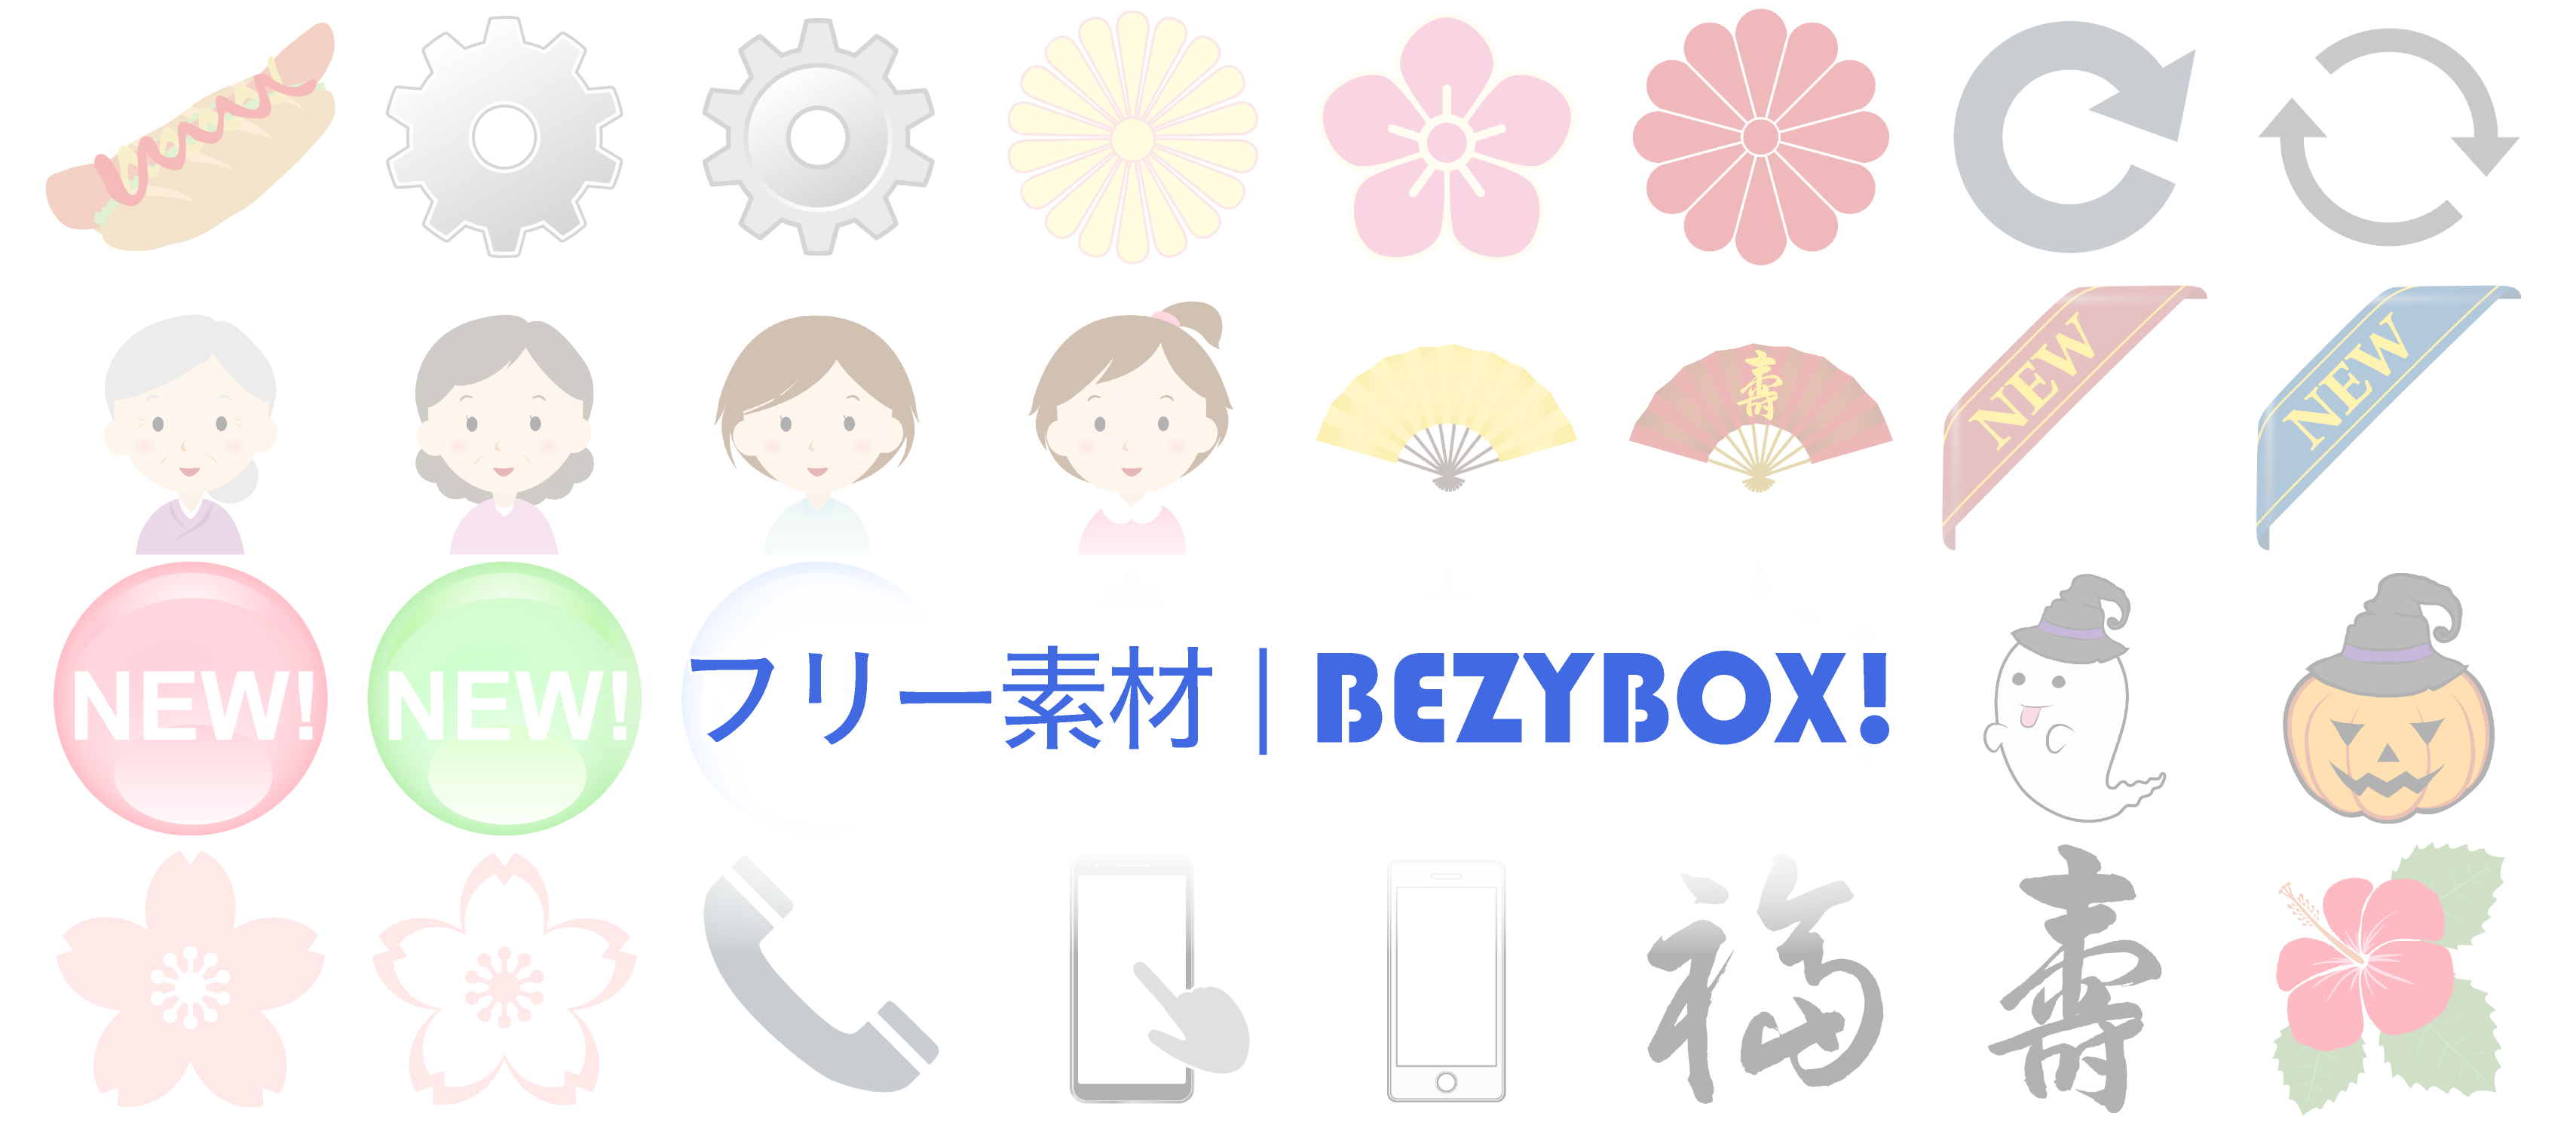 フリー素材 Bezybox